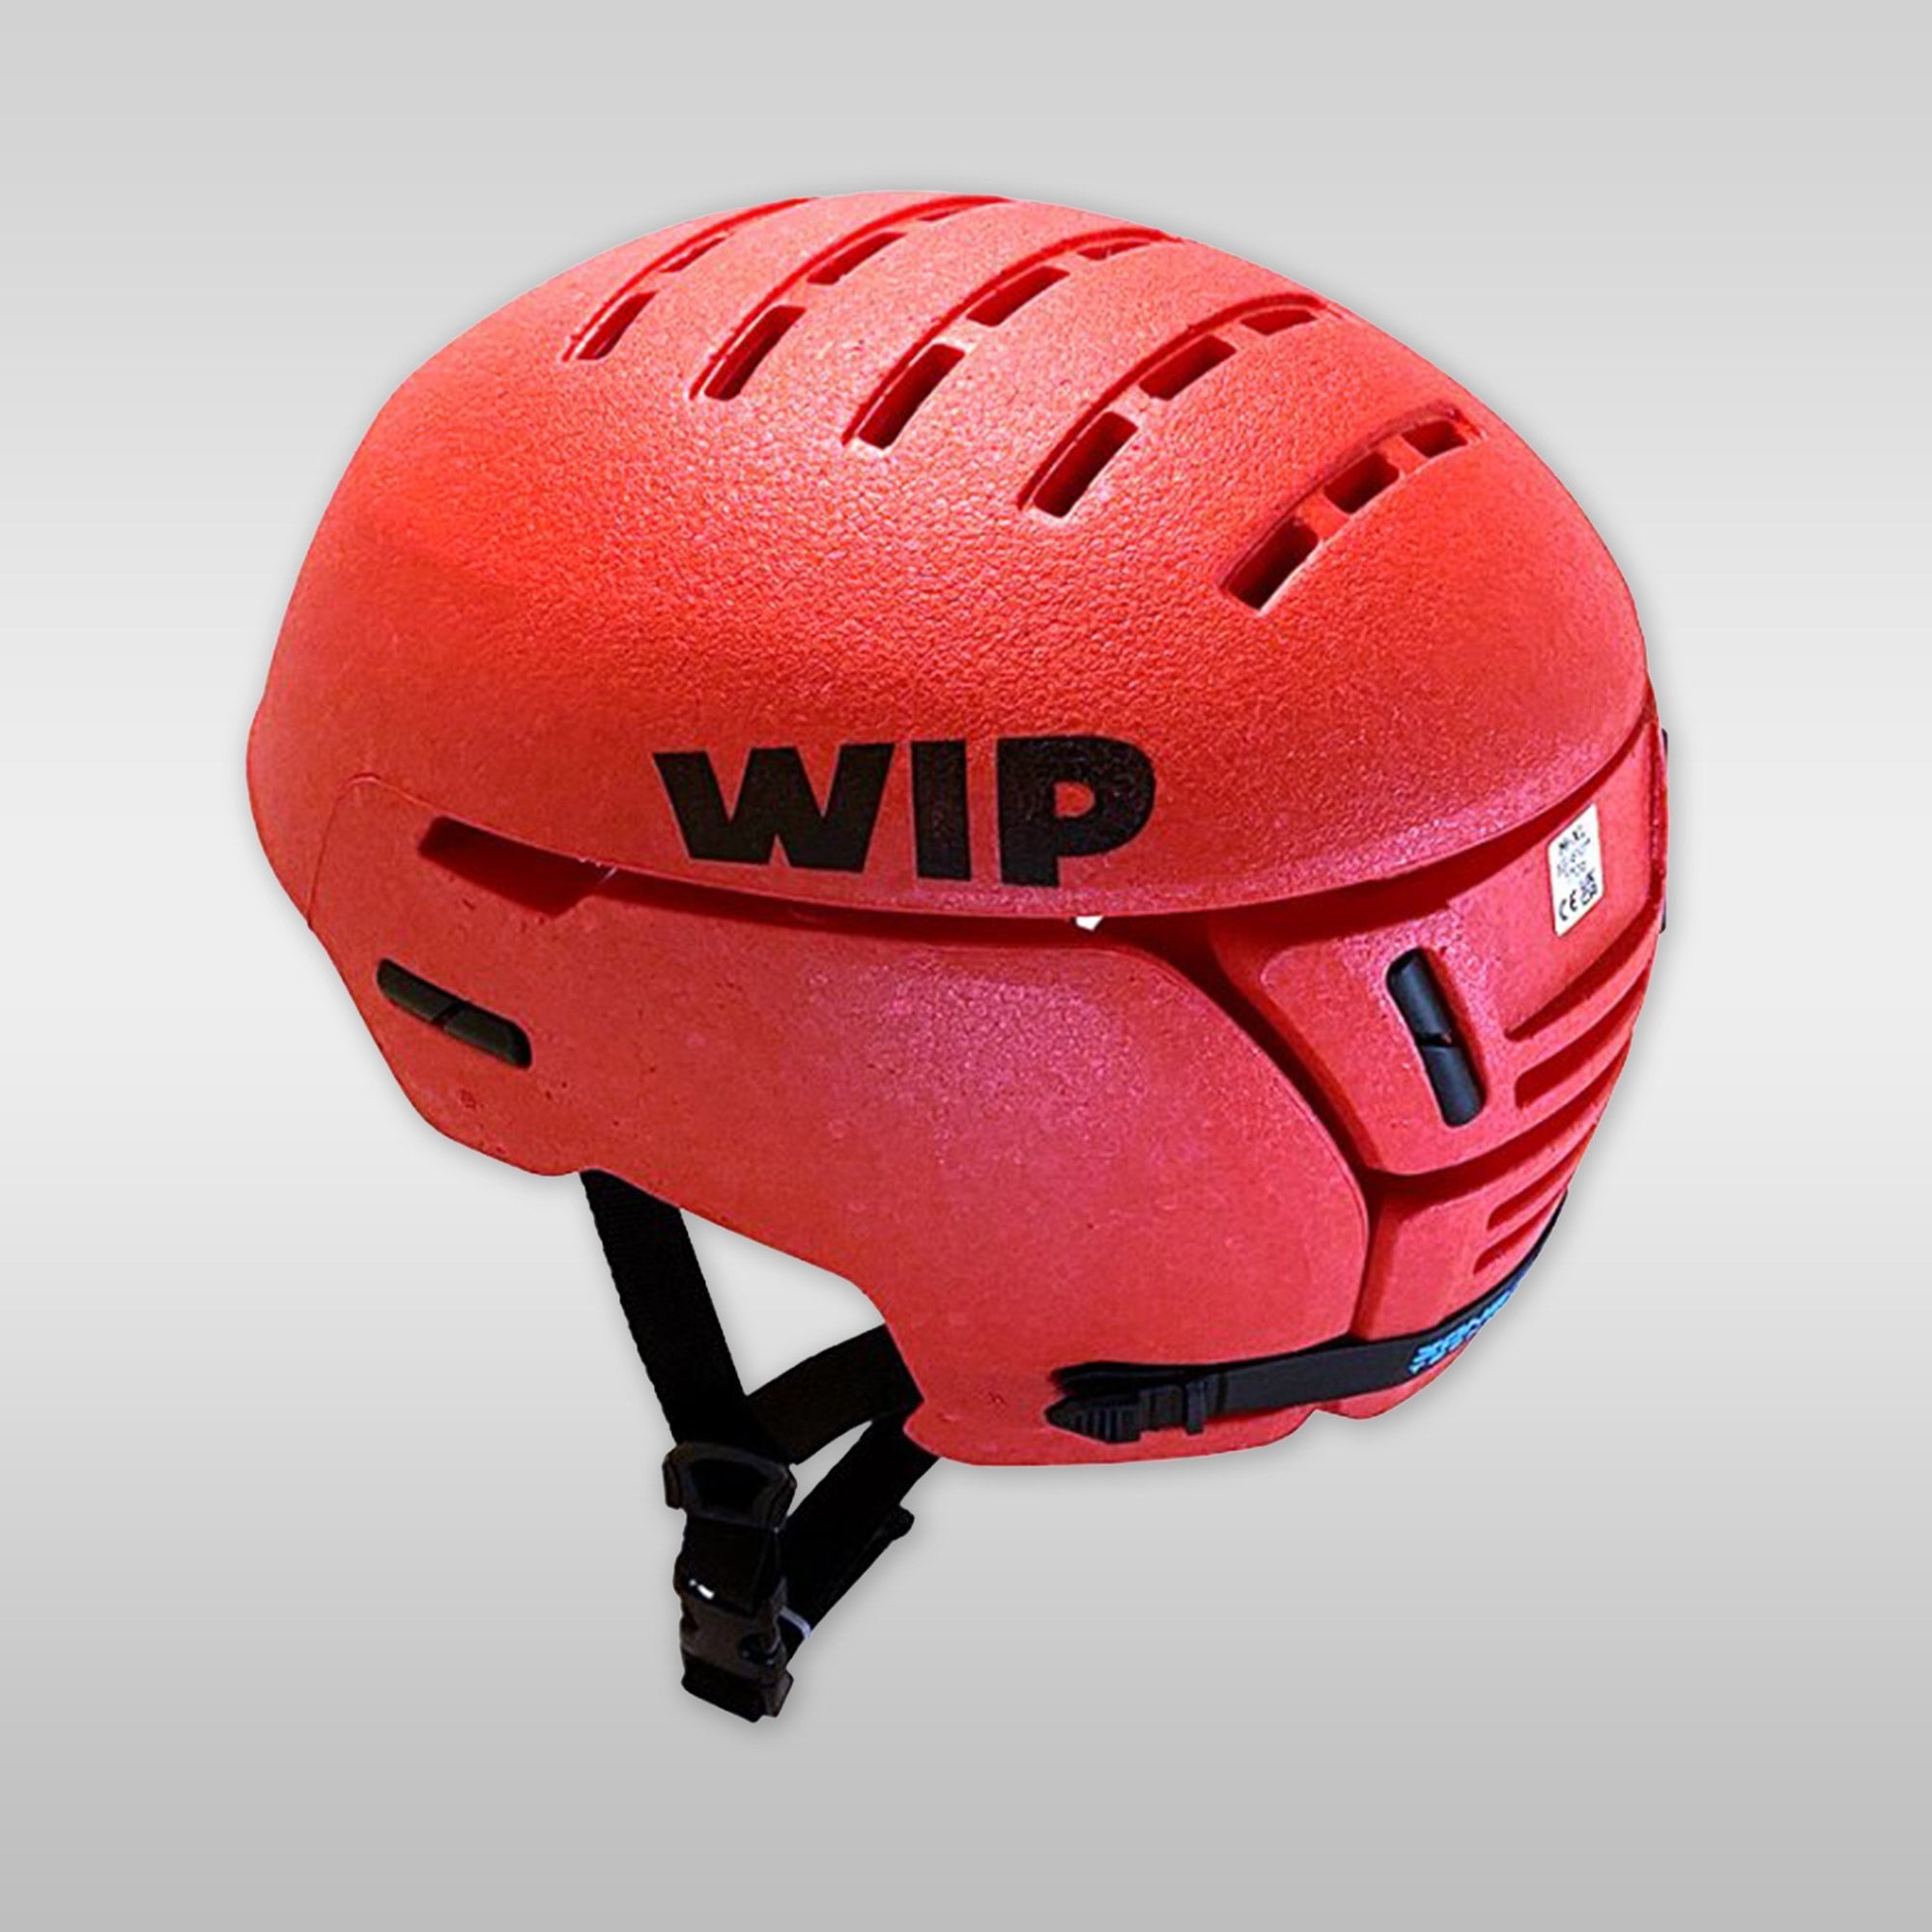 WIP Fordward Watersports windsurfing wingfoil Helmet Wiflex